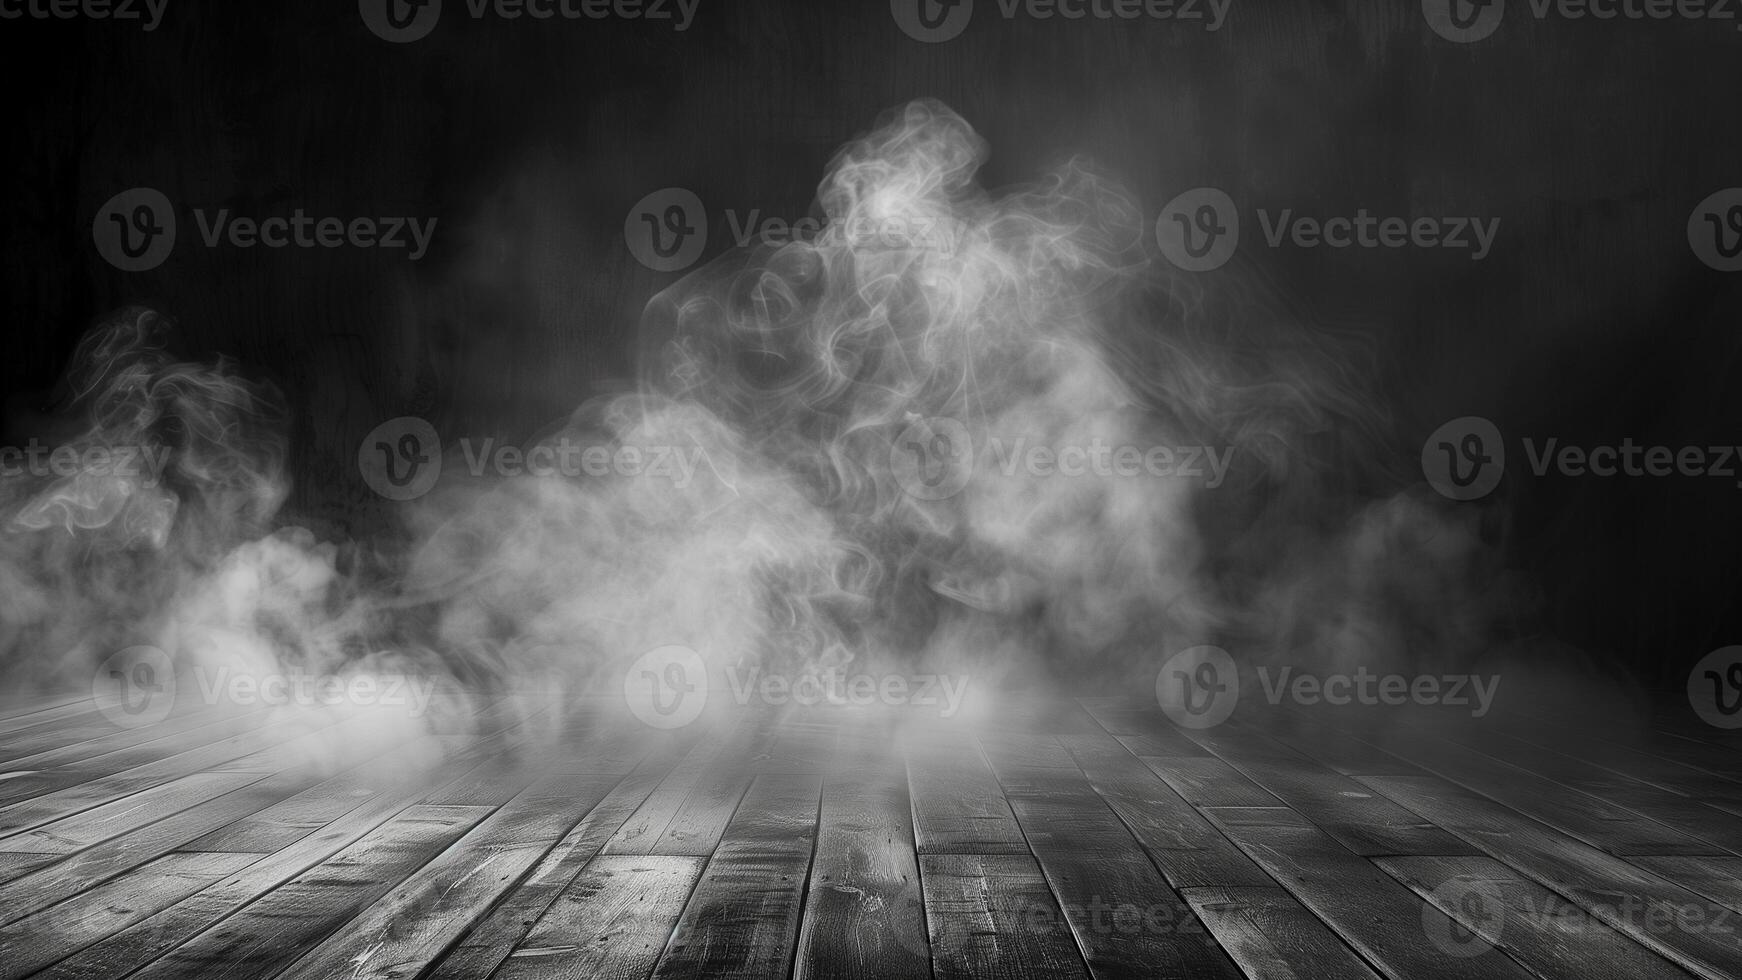 buio camera con di legno pavimento e Fumo. astratto buio sfondo con Fumo foto